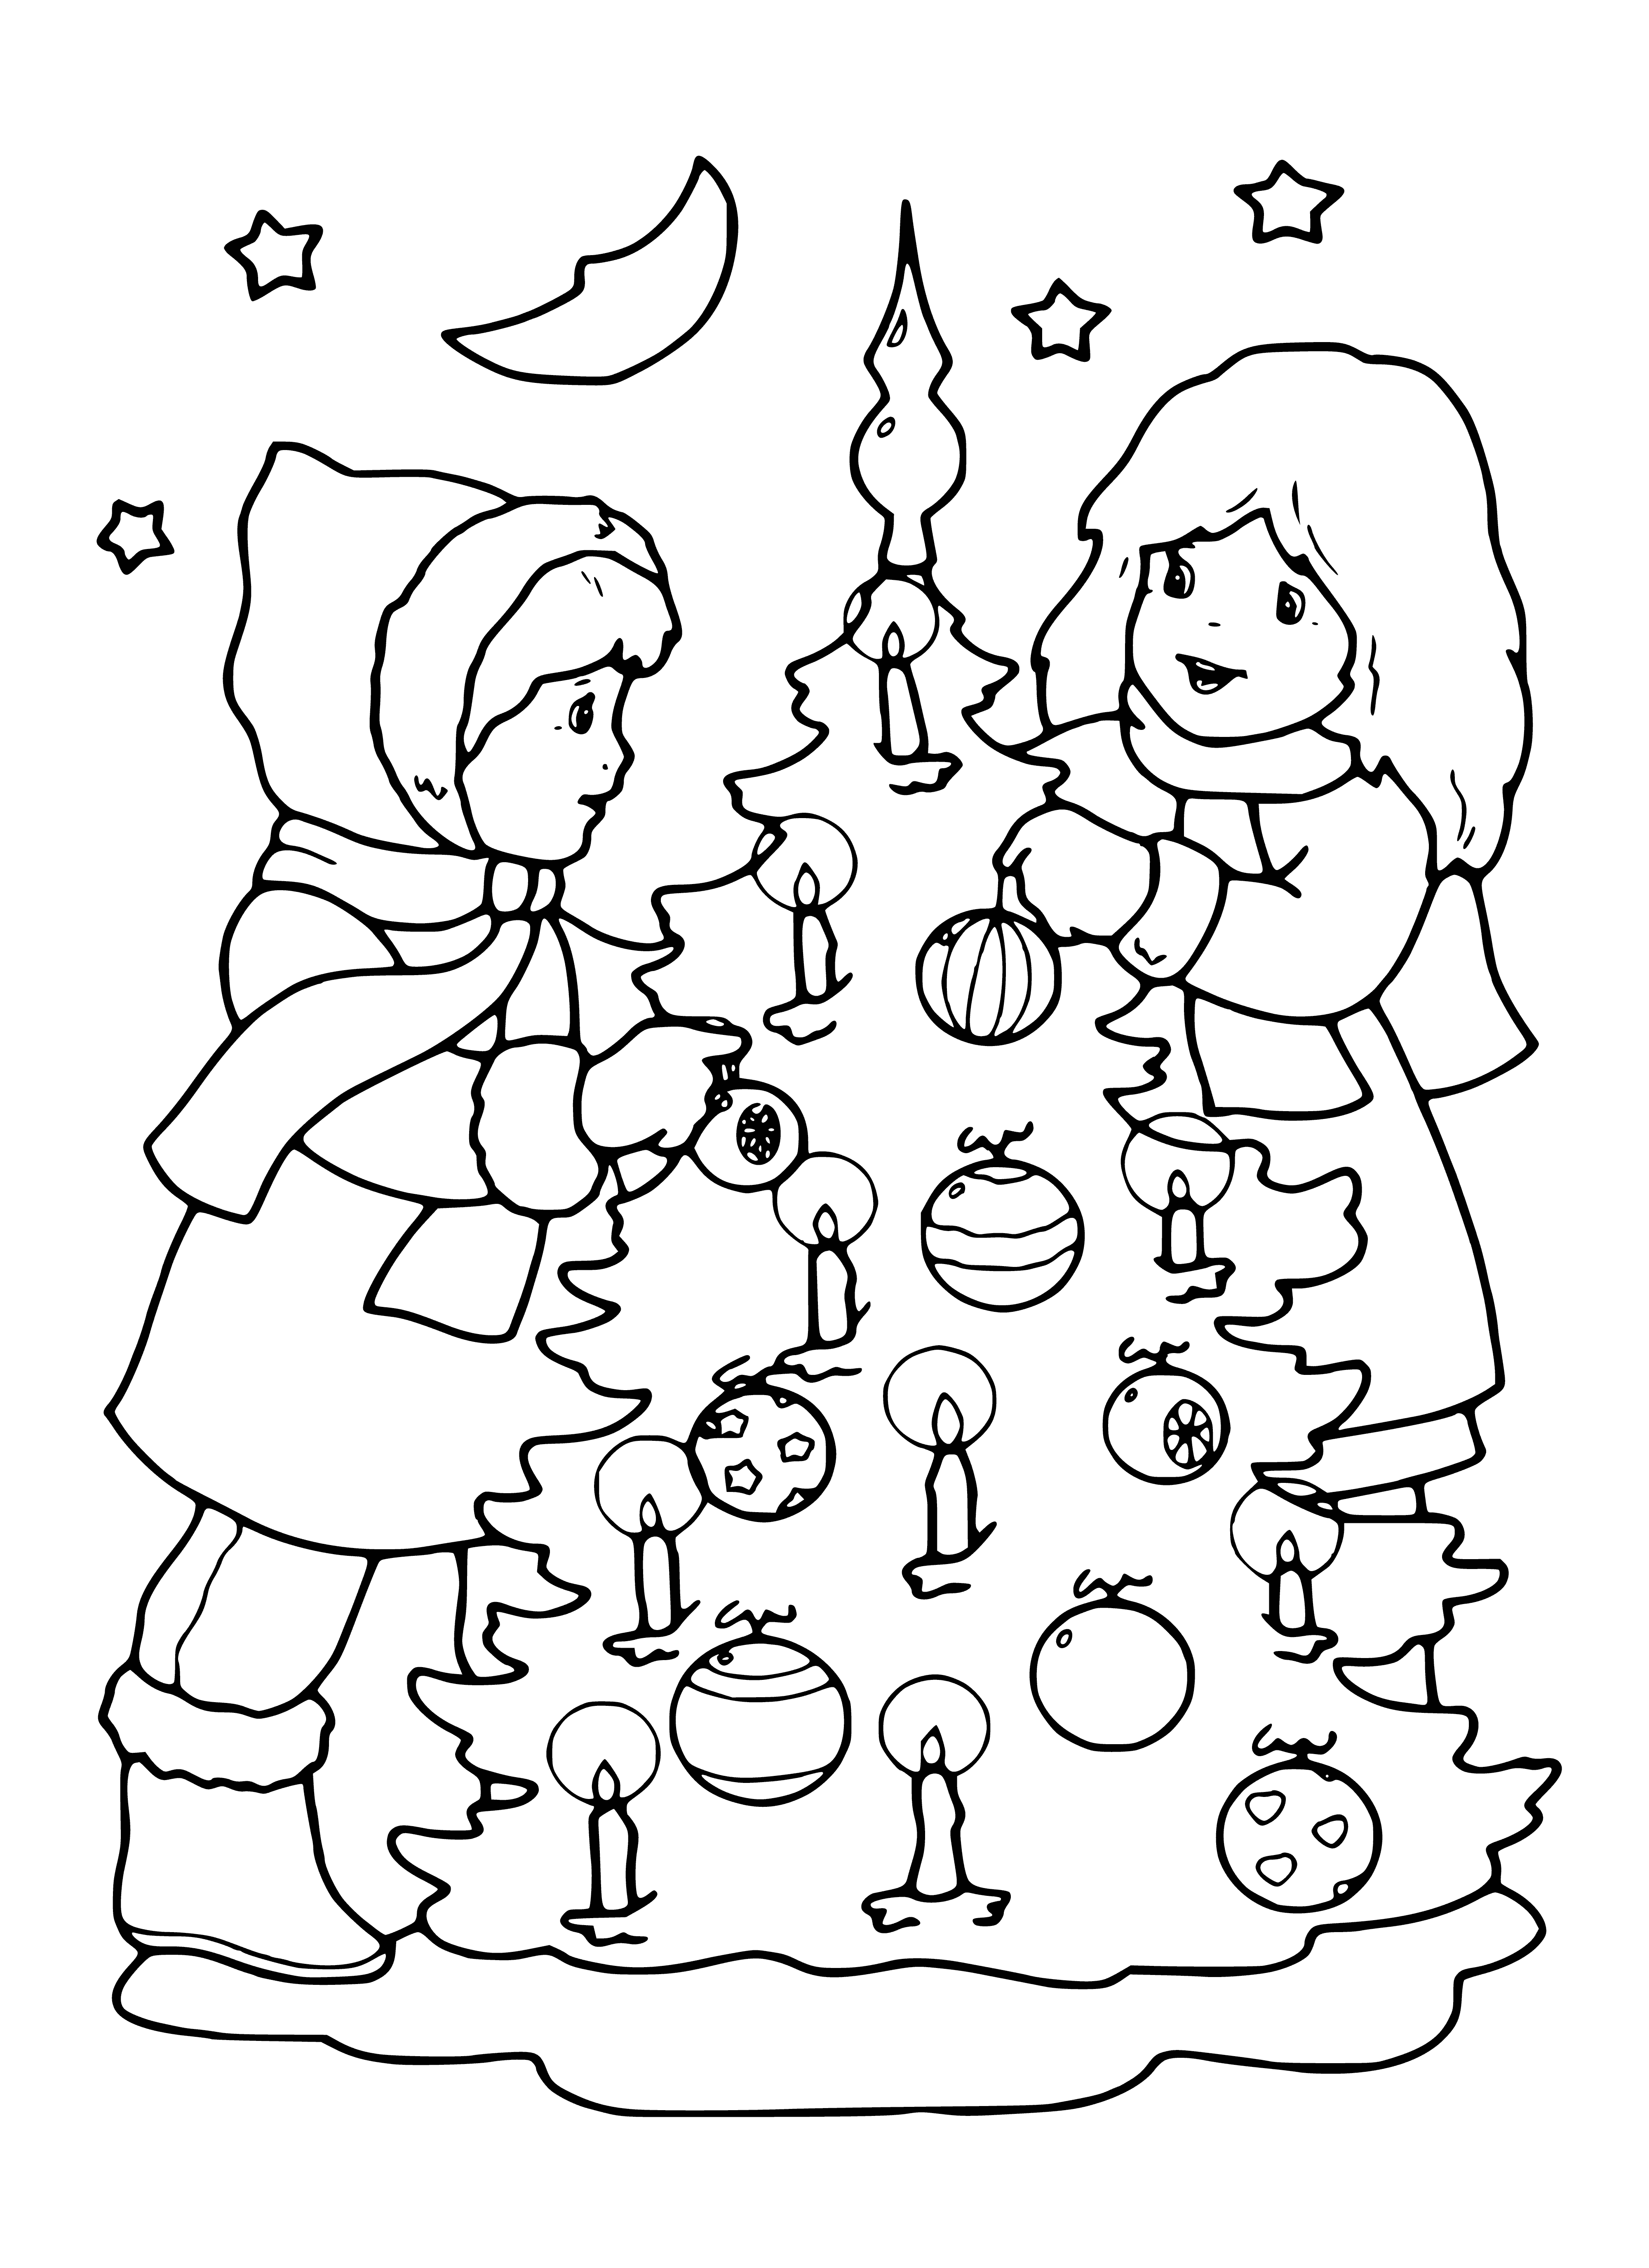 Kinder und Weihnachtsbaum Malseite